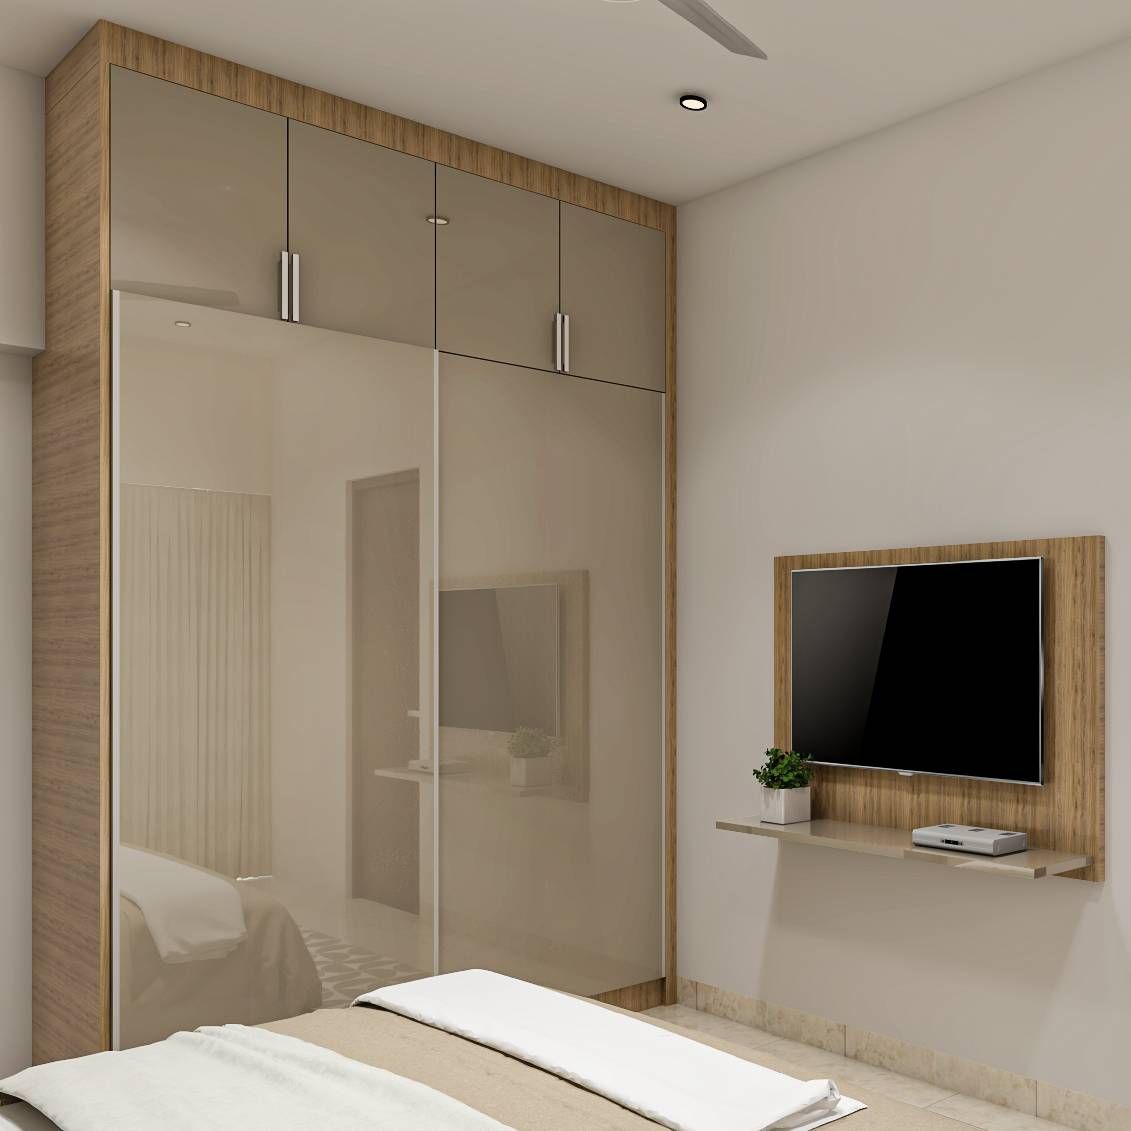 2-Door Sliding Wardrobe Design Bedrooms | Livspace